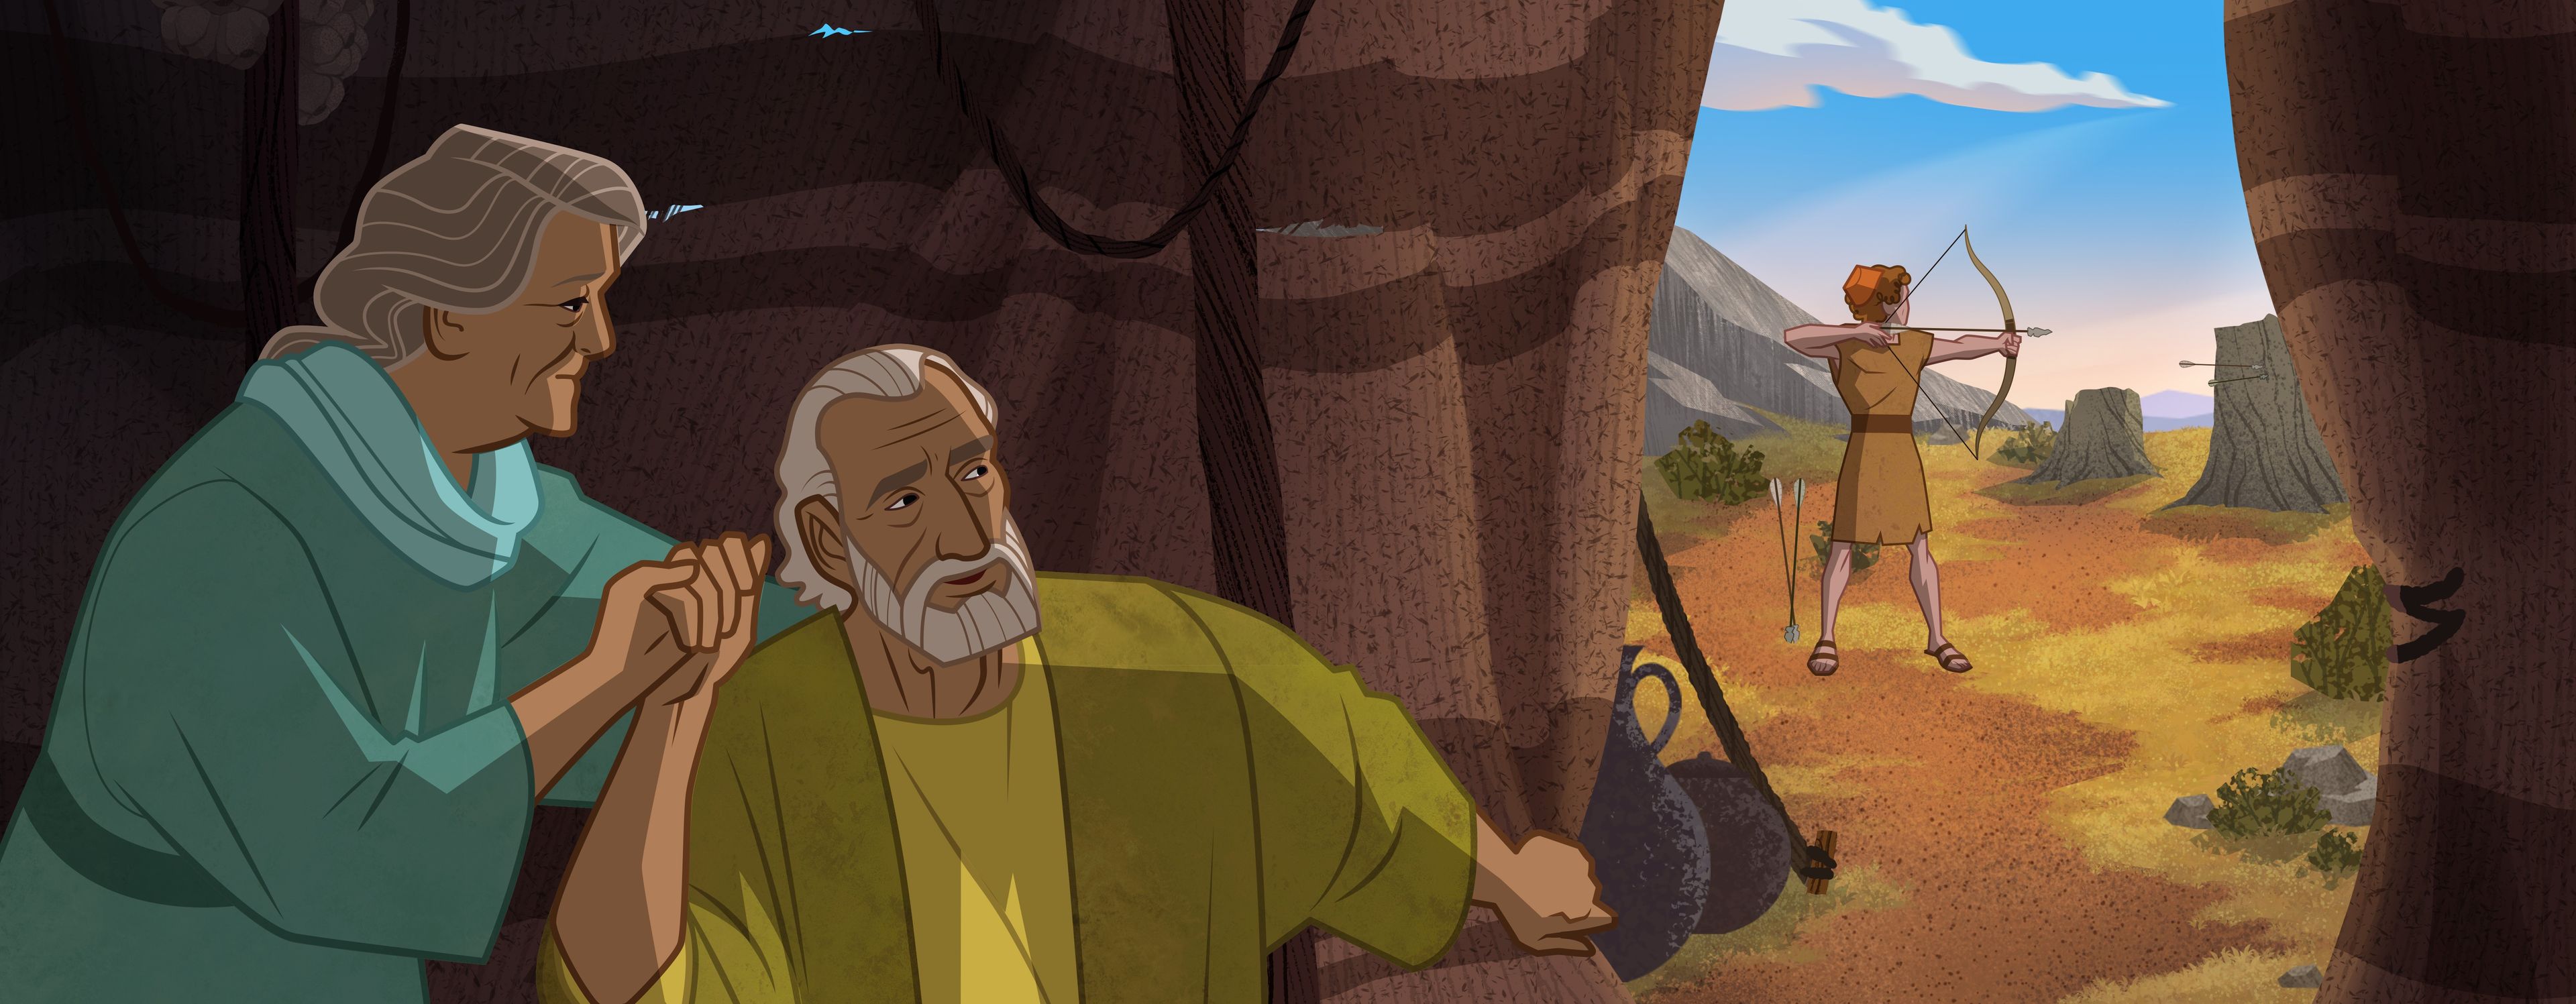 Illustration von Sara und Abraham, die Isaak zuschauen 
Genesis 17:1-8; 22:1,2